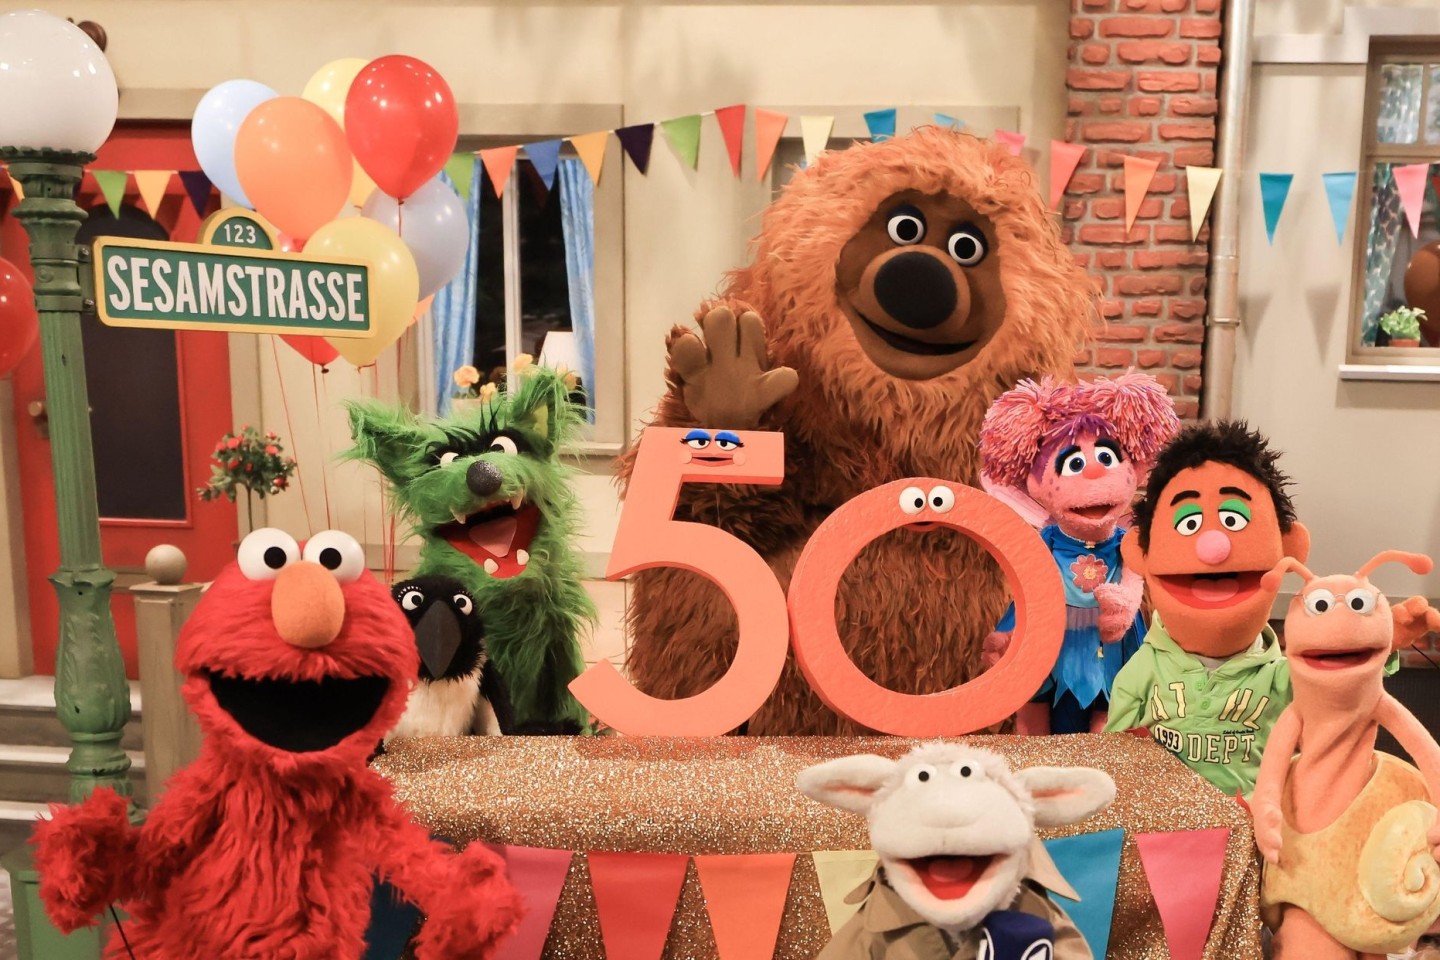 Am 8. Januar feiert die deutsche Sesamstraße ihr 50-jähriges Jubiläum.